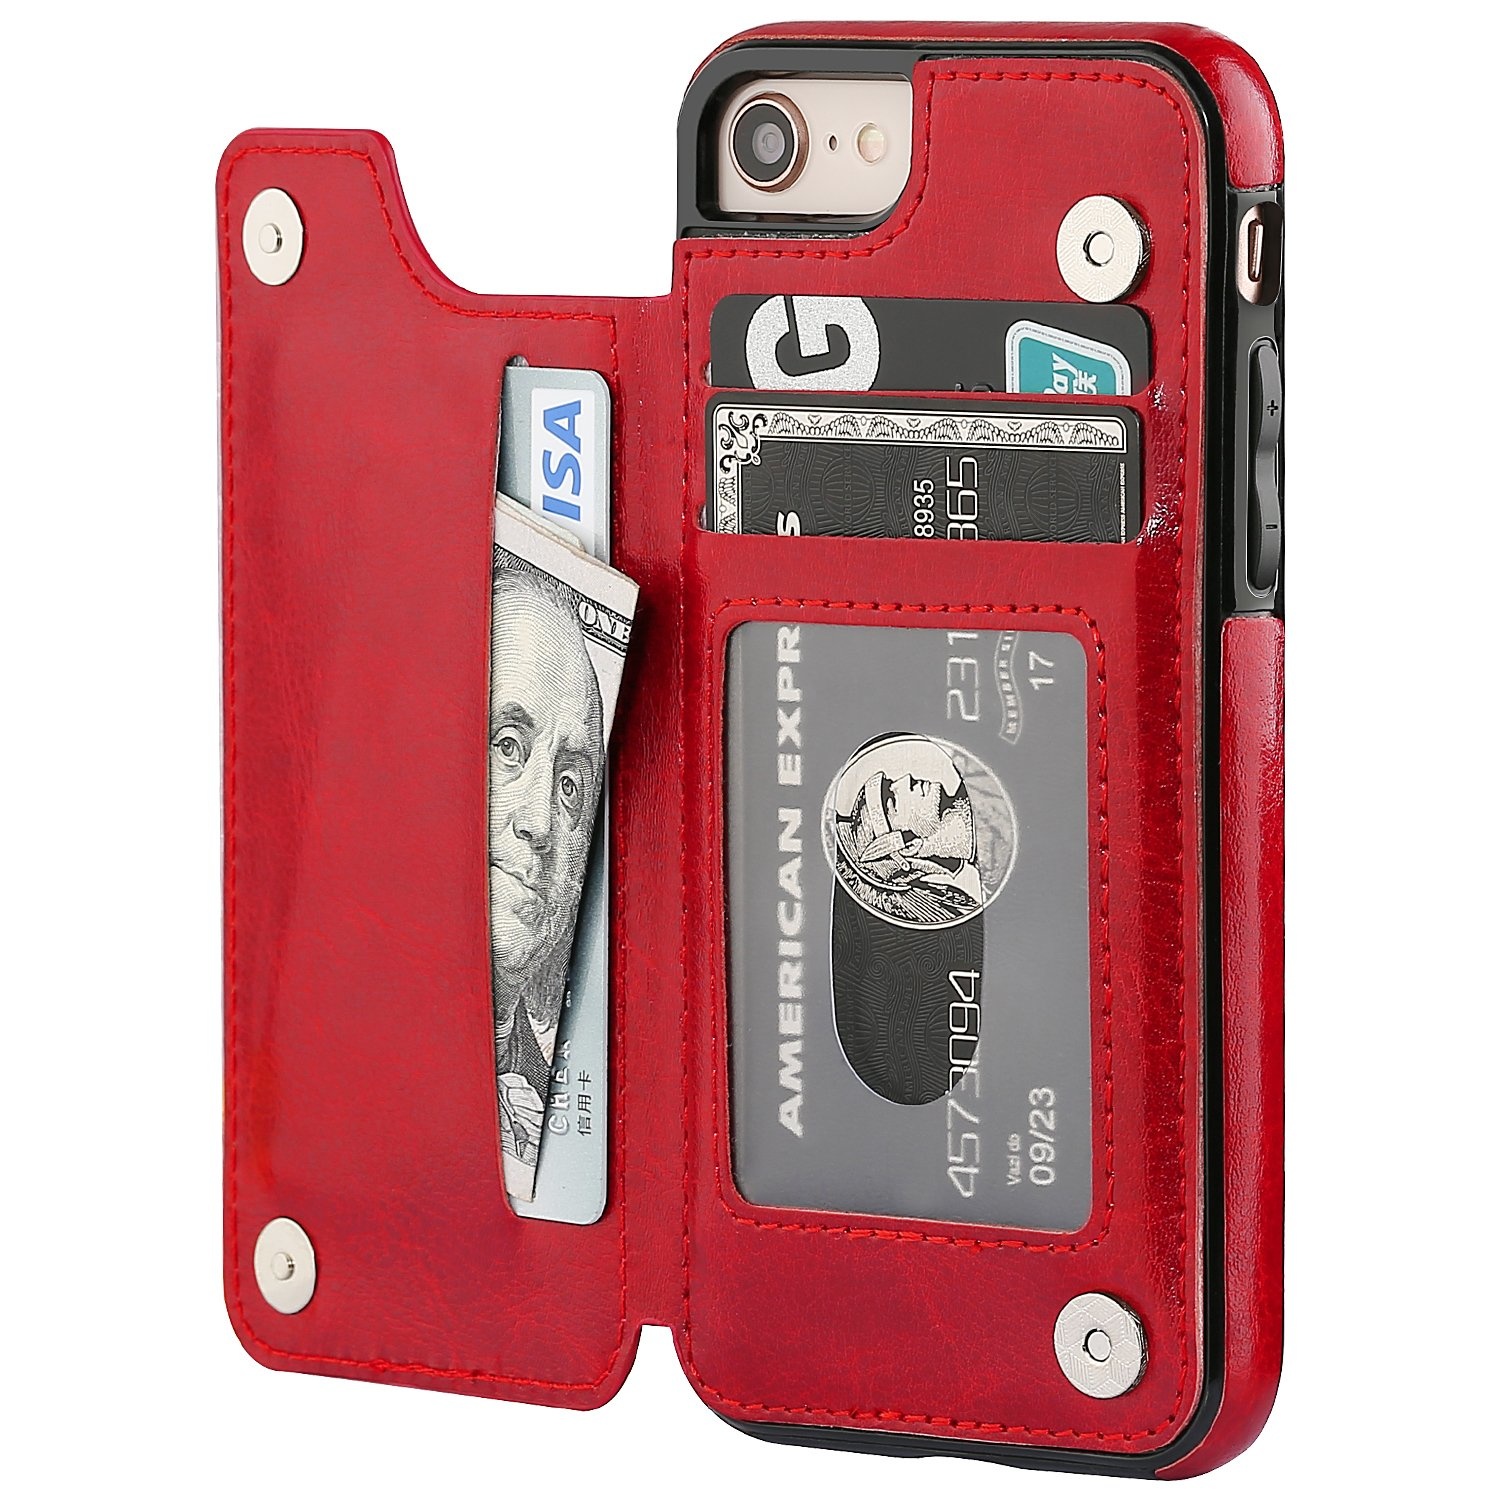 Rubber Vrijgevig Kritiek Wallet Case iPhone 8 / 7 rood - Phone-Factory